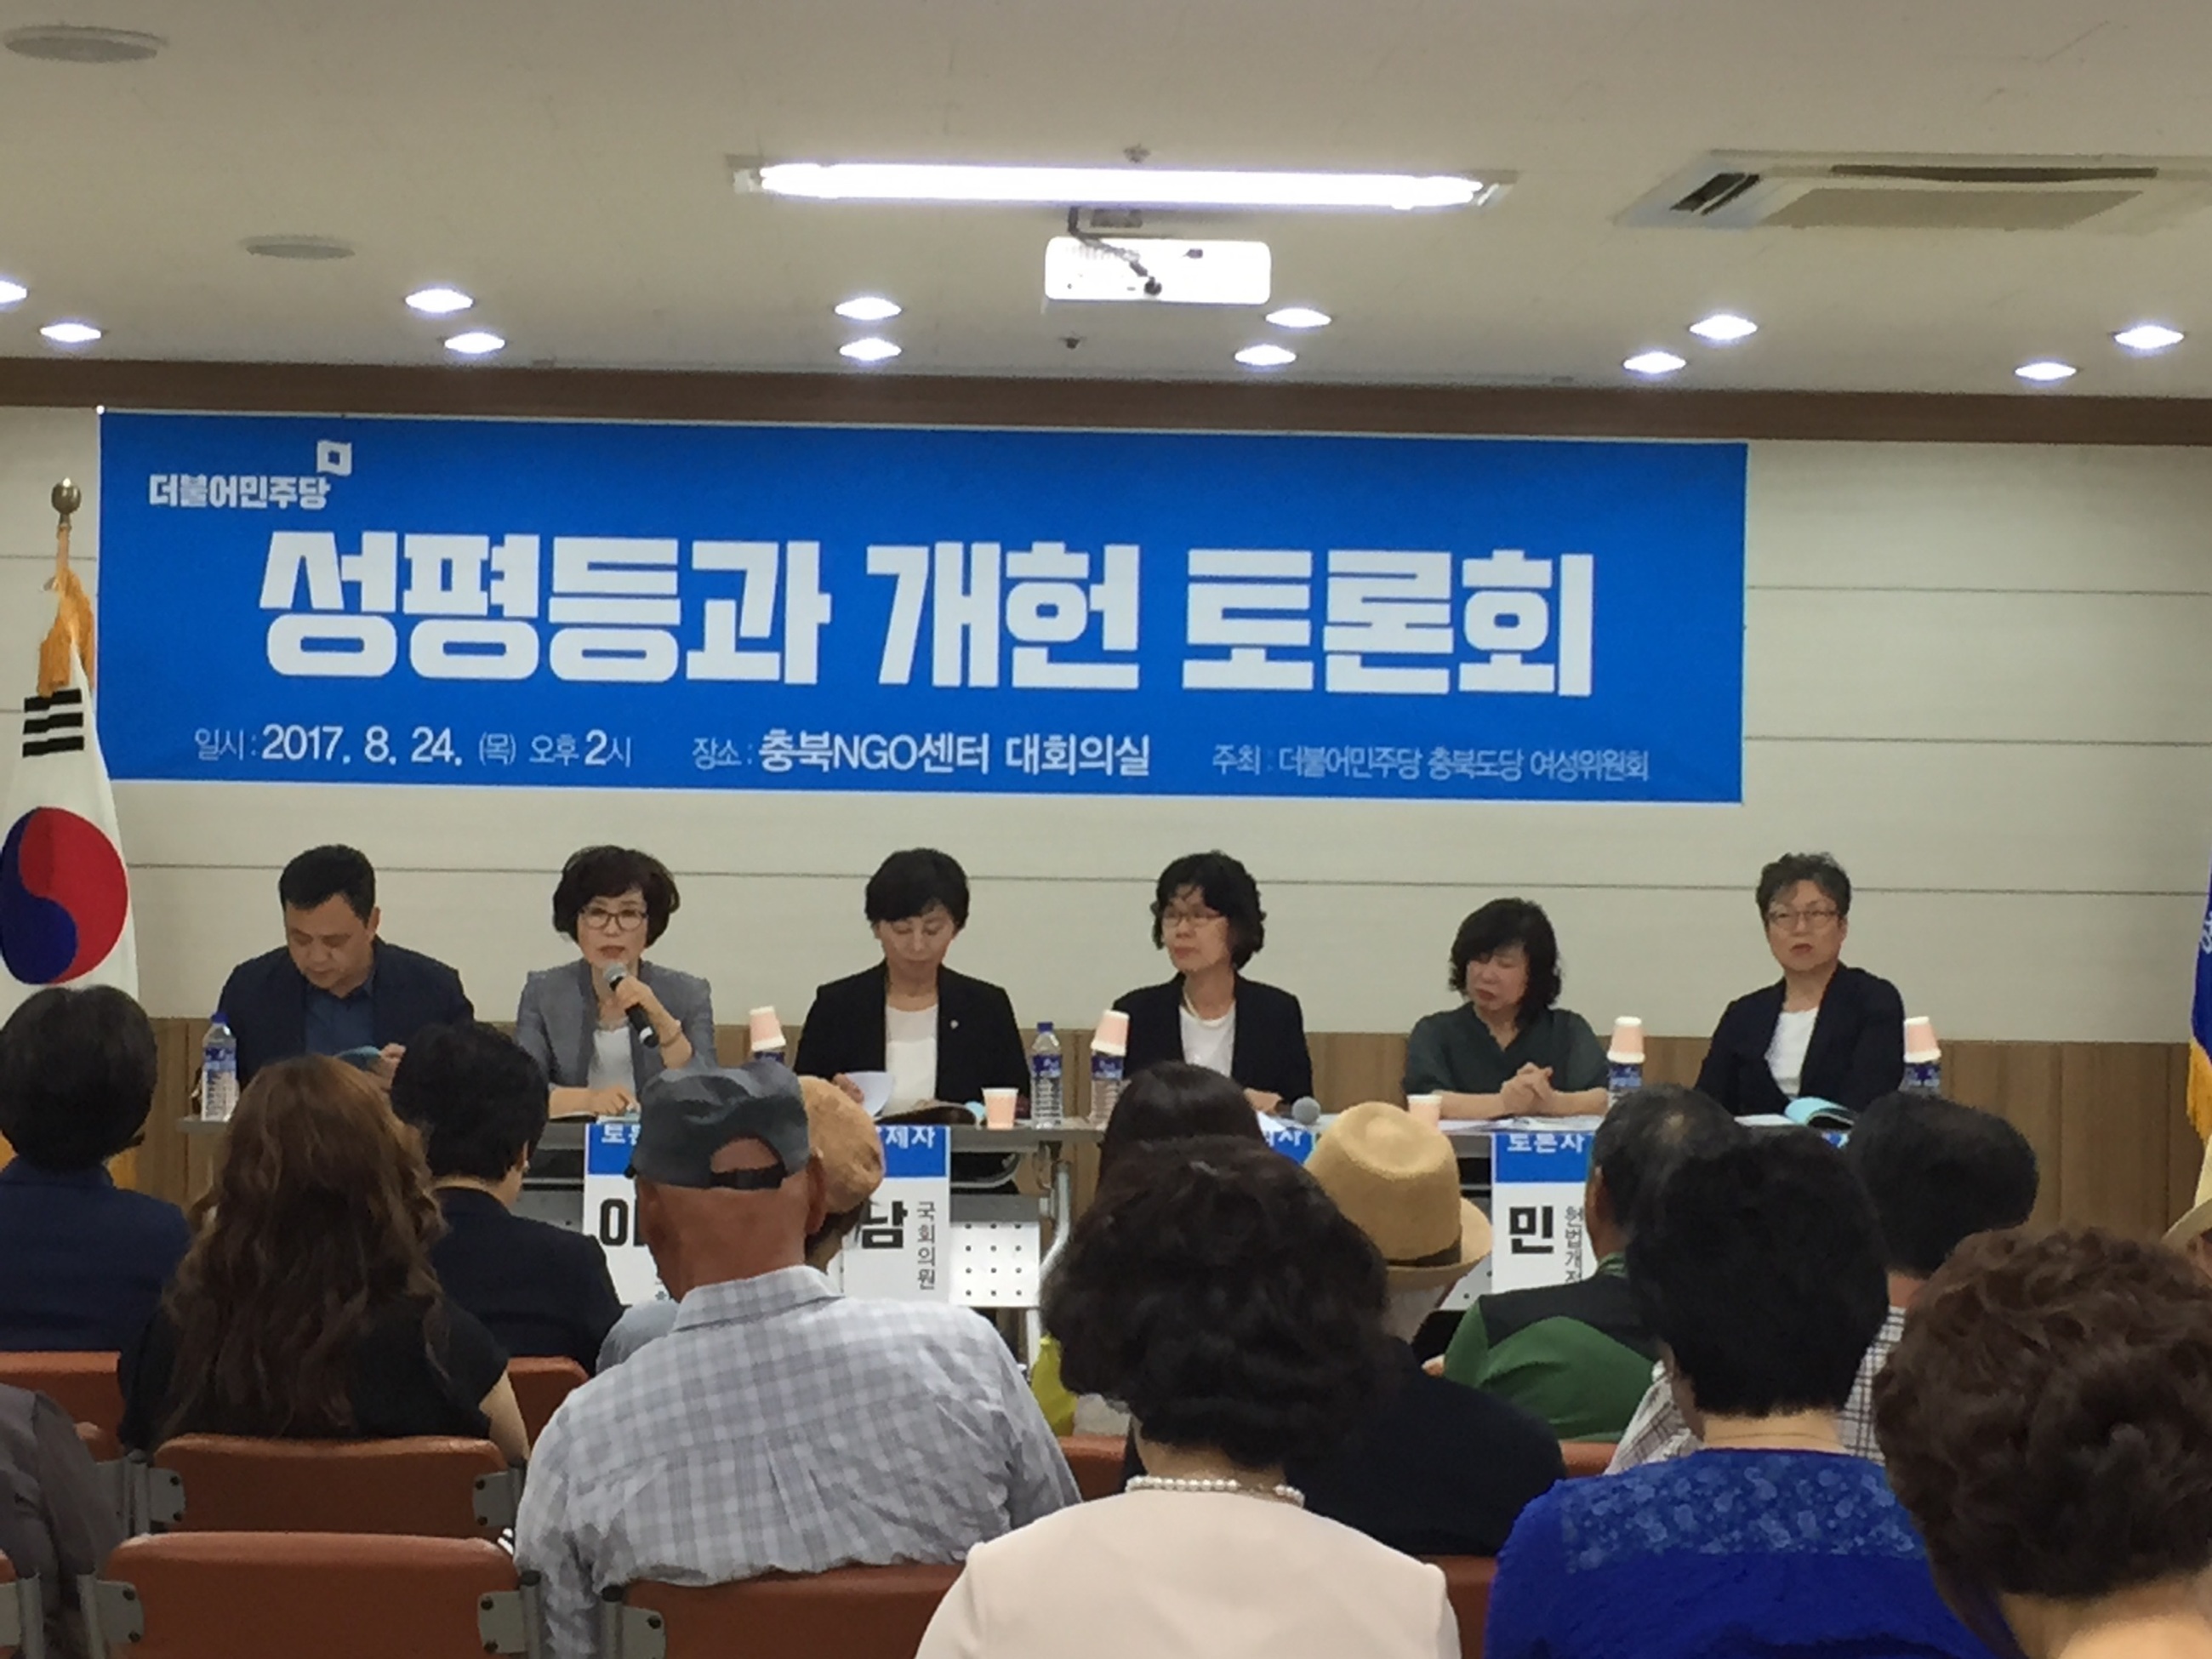 이숙애 도의원, 성평등 실현을 위한 개헌 토론회 참석 - 2